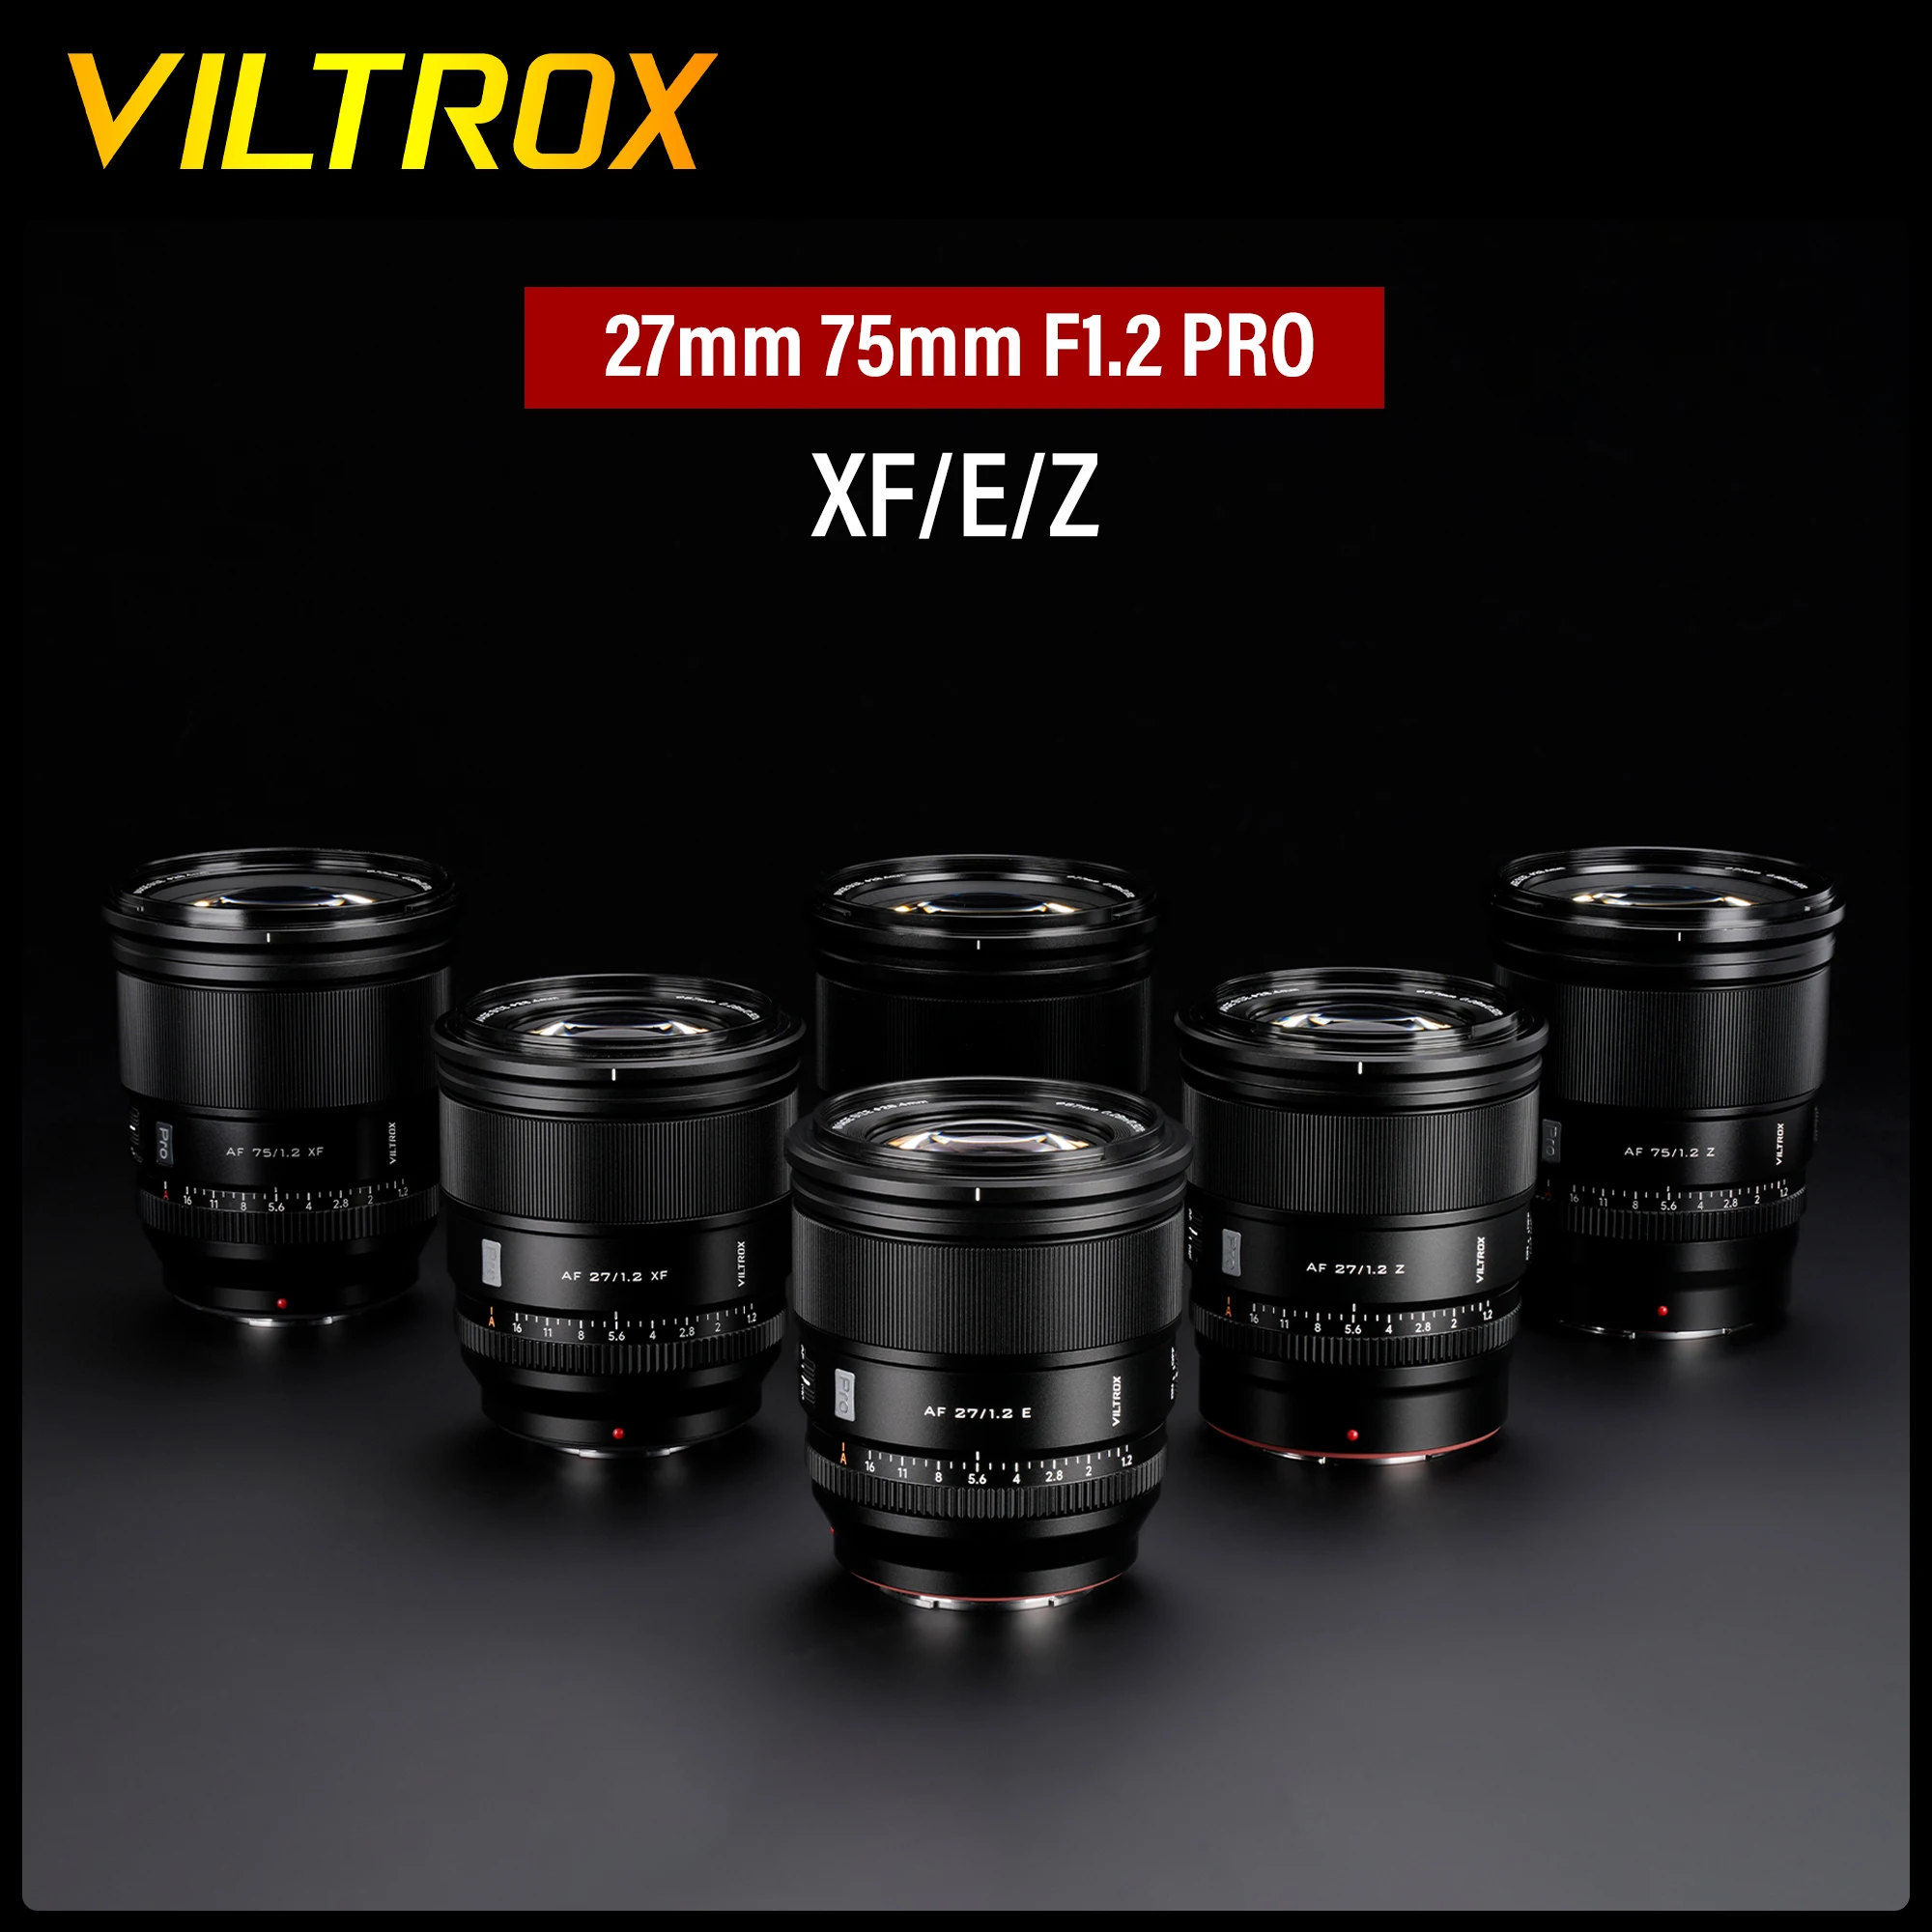 Viltrox Auto Focus Portrait Camera Lens, Grande Abertura, Cremoso Bokeh, 75mm, 27mm, F1.2 PRO, Fuji X, Sony E, Nikon Z, APS-C